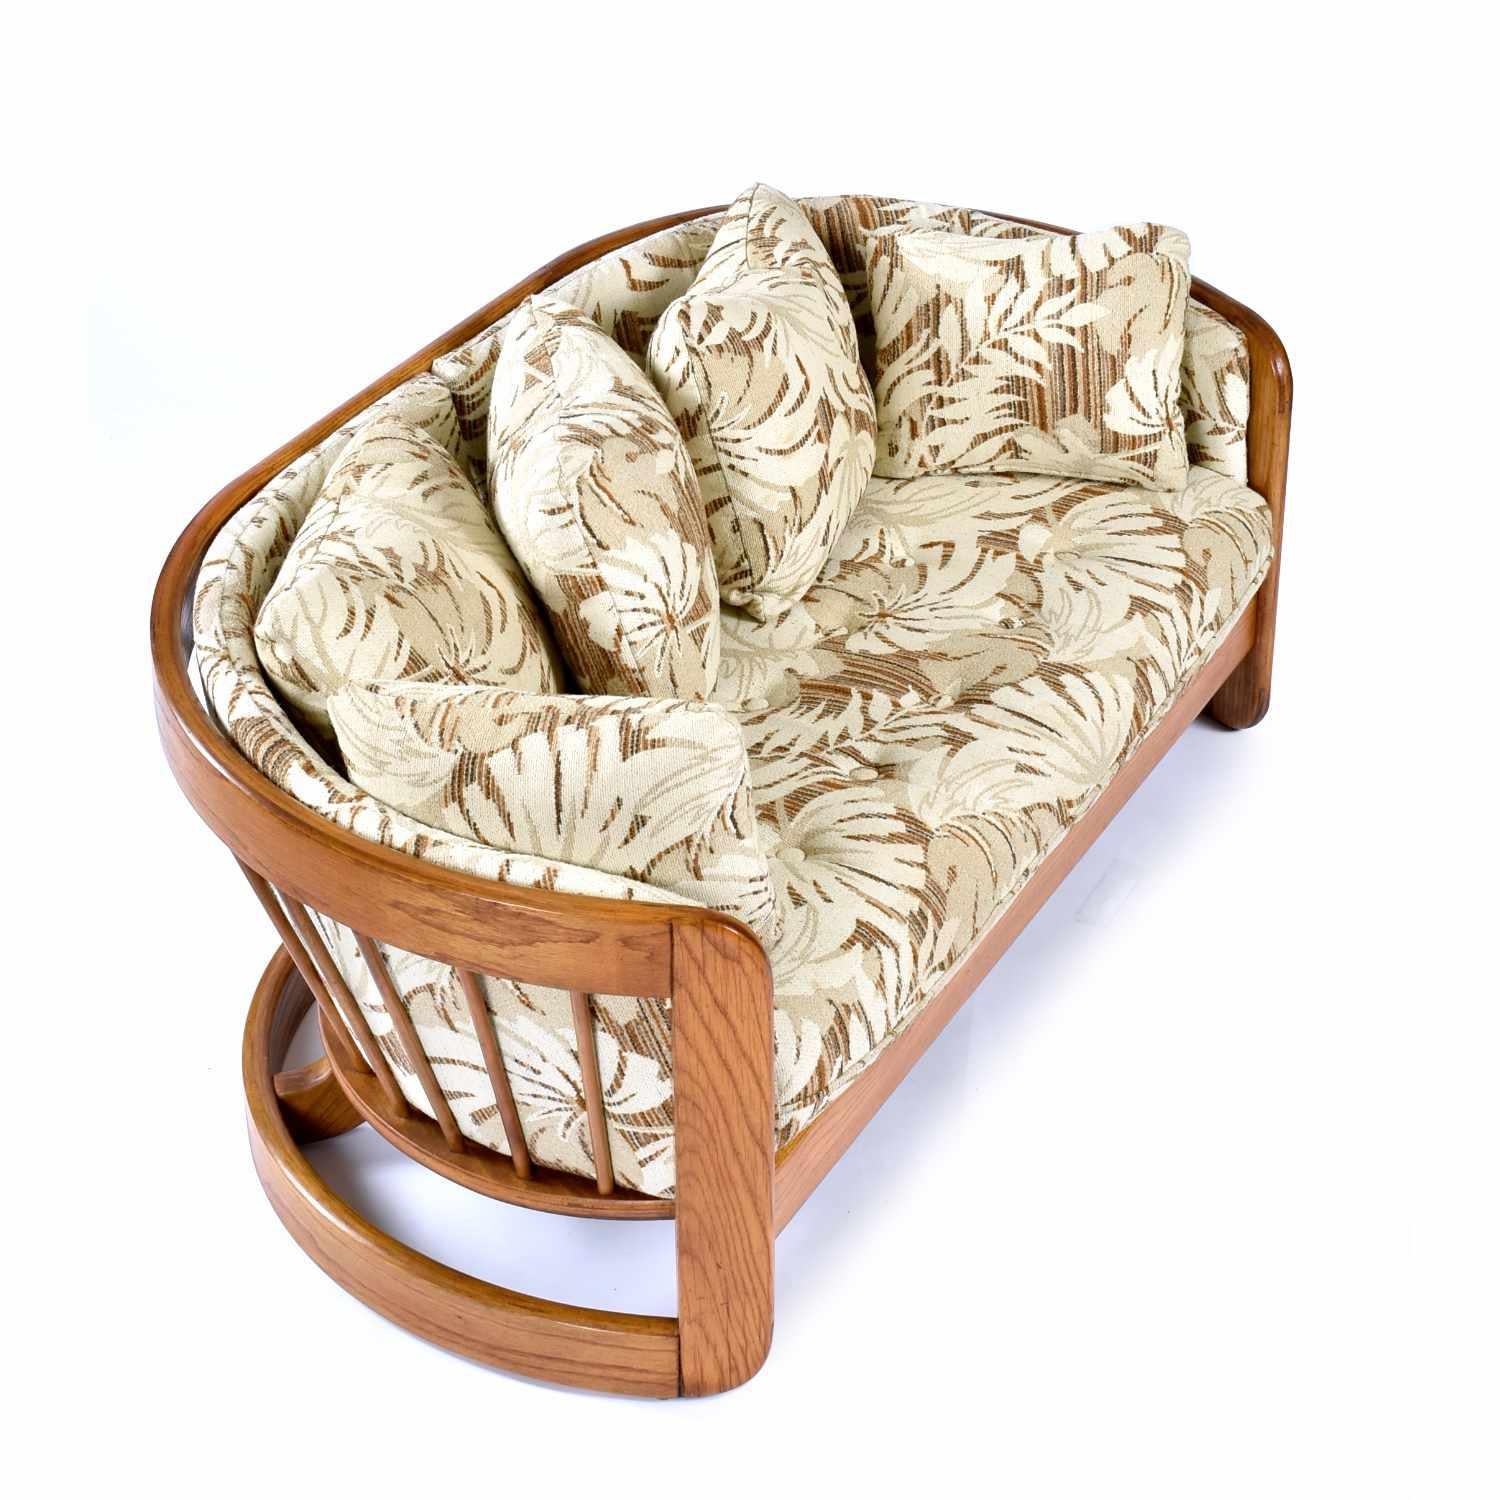 Vintage 1980s massiver Eiche geschwungenes Sofa von Howard Furniture. Das Sofasofa ist originalgetreu gepolstert. Der Stoff ist ein botanisches Muster in neutralem Hellbraun, Creme und Braun. Das Sofa ist mit seinem großen Sitzkissen und den